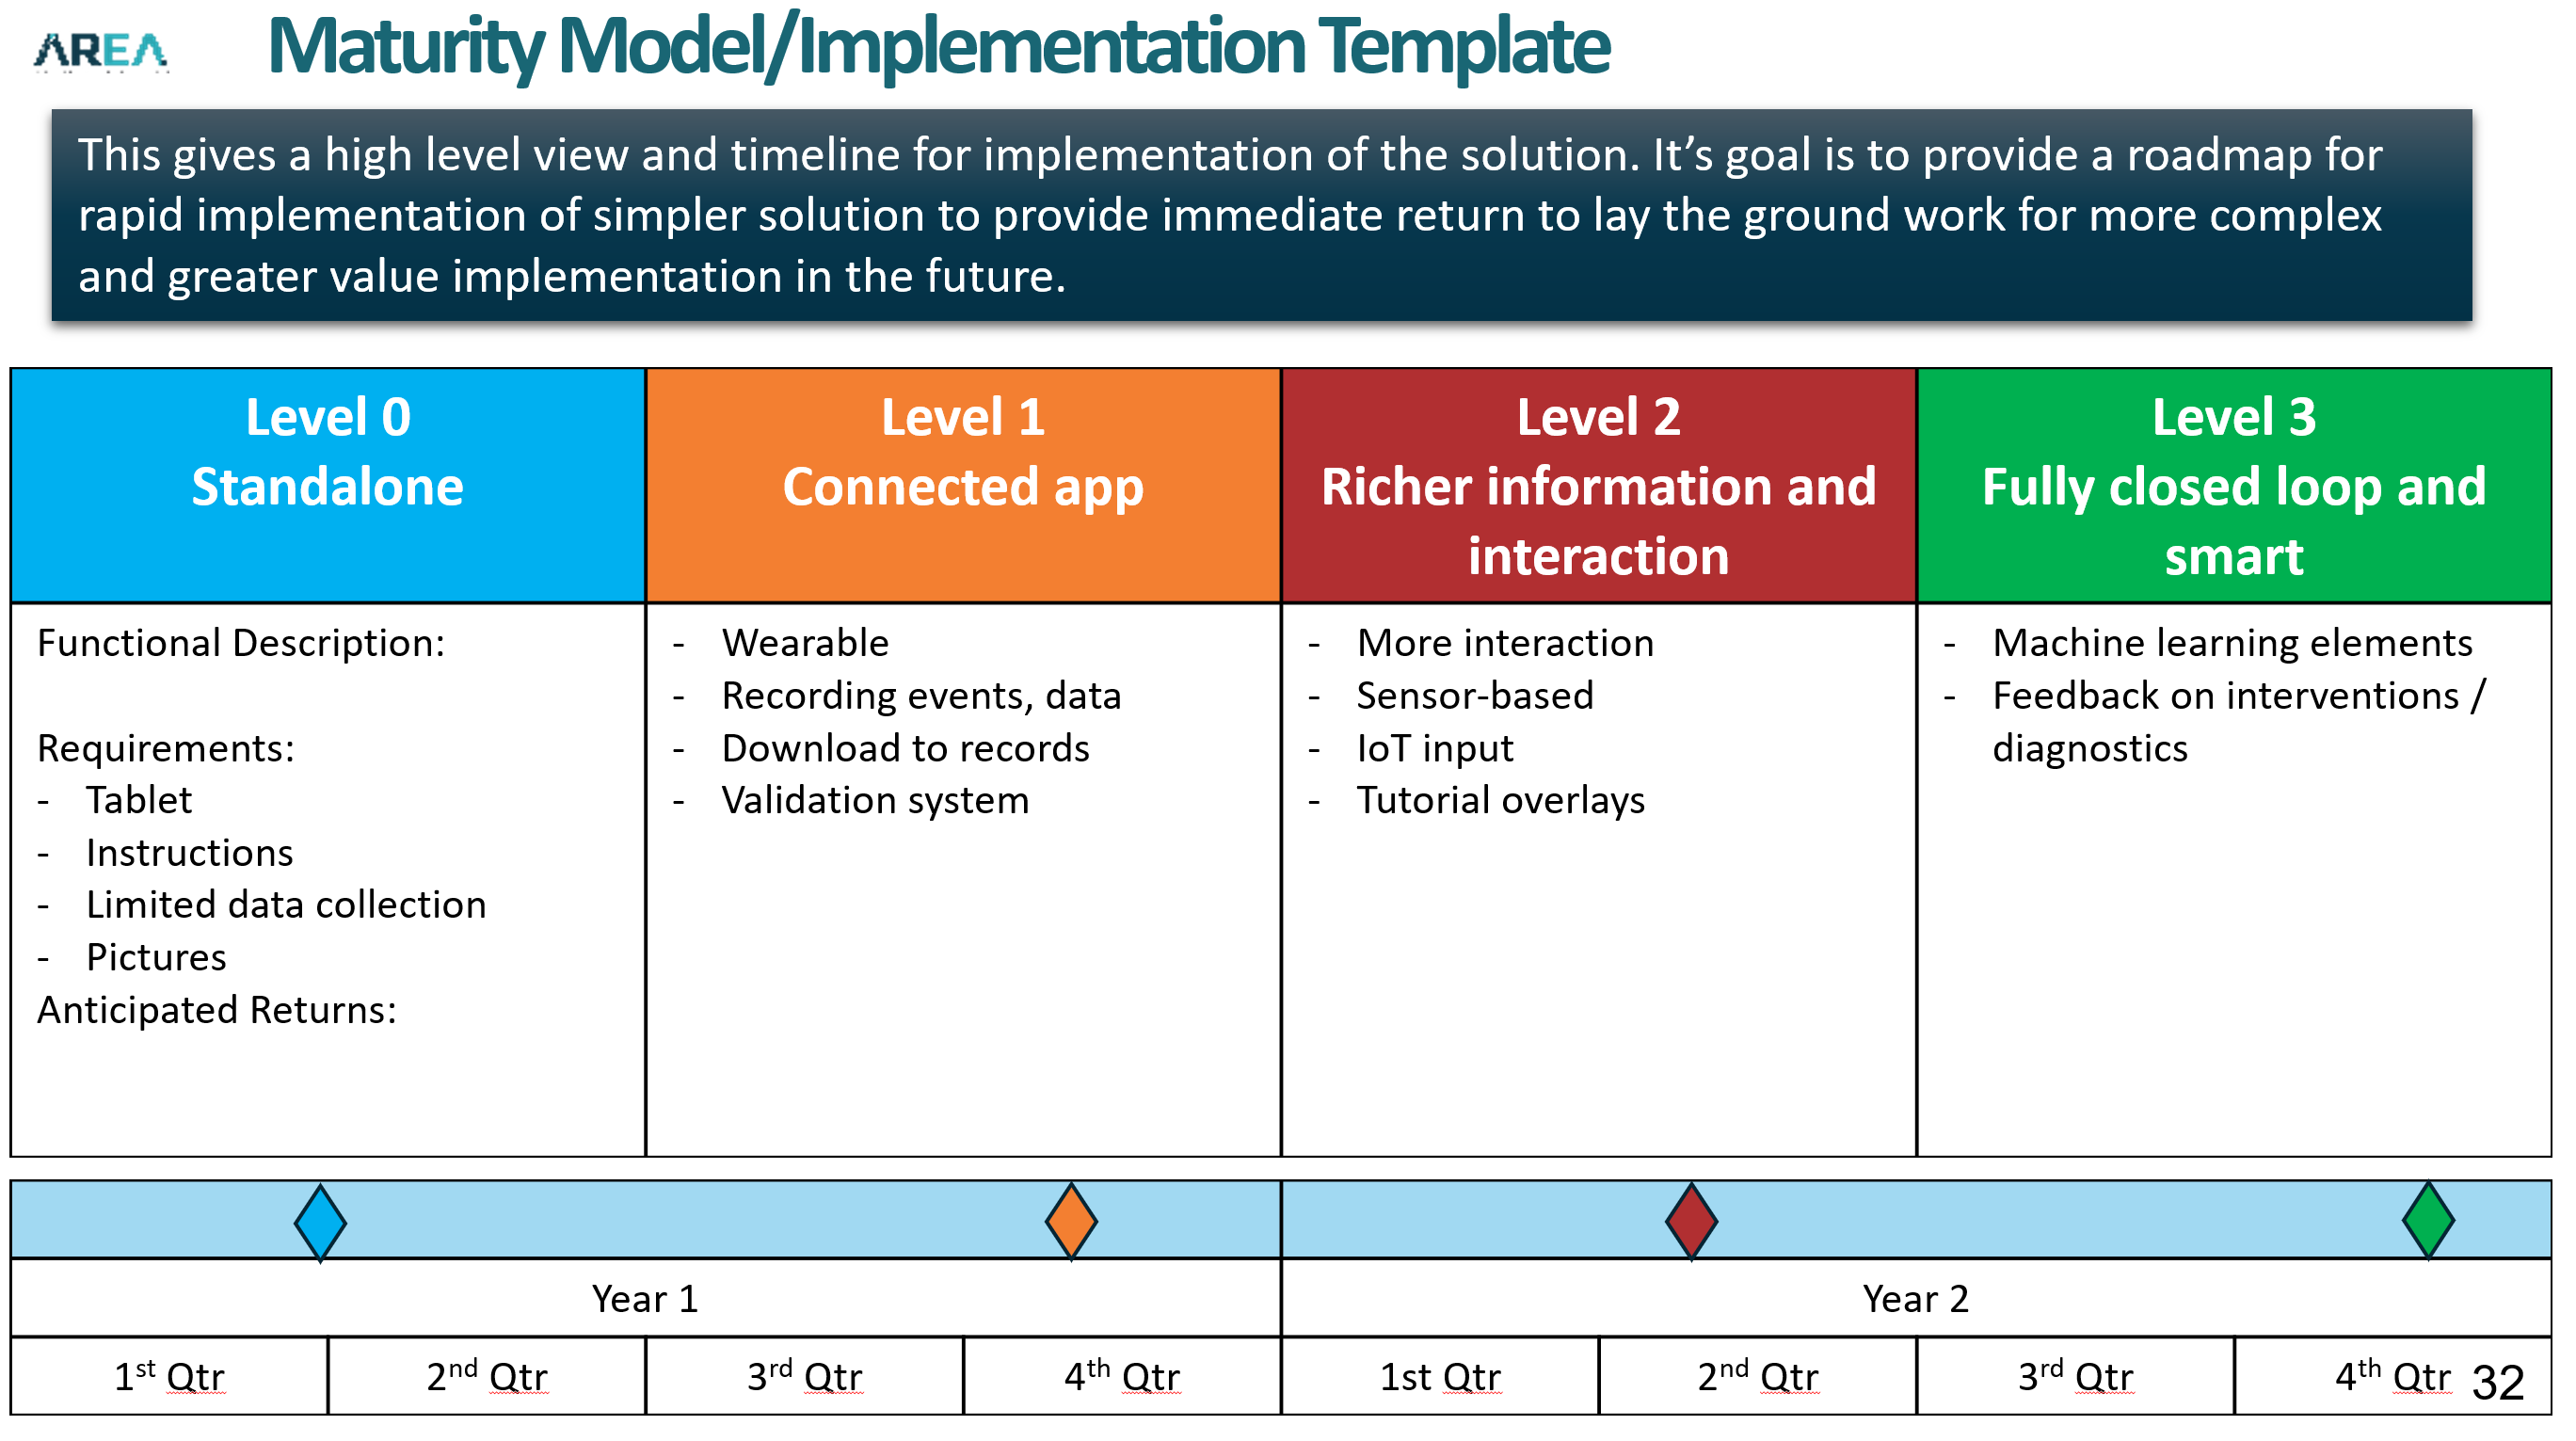 maturity-model-implementation-template-area